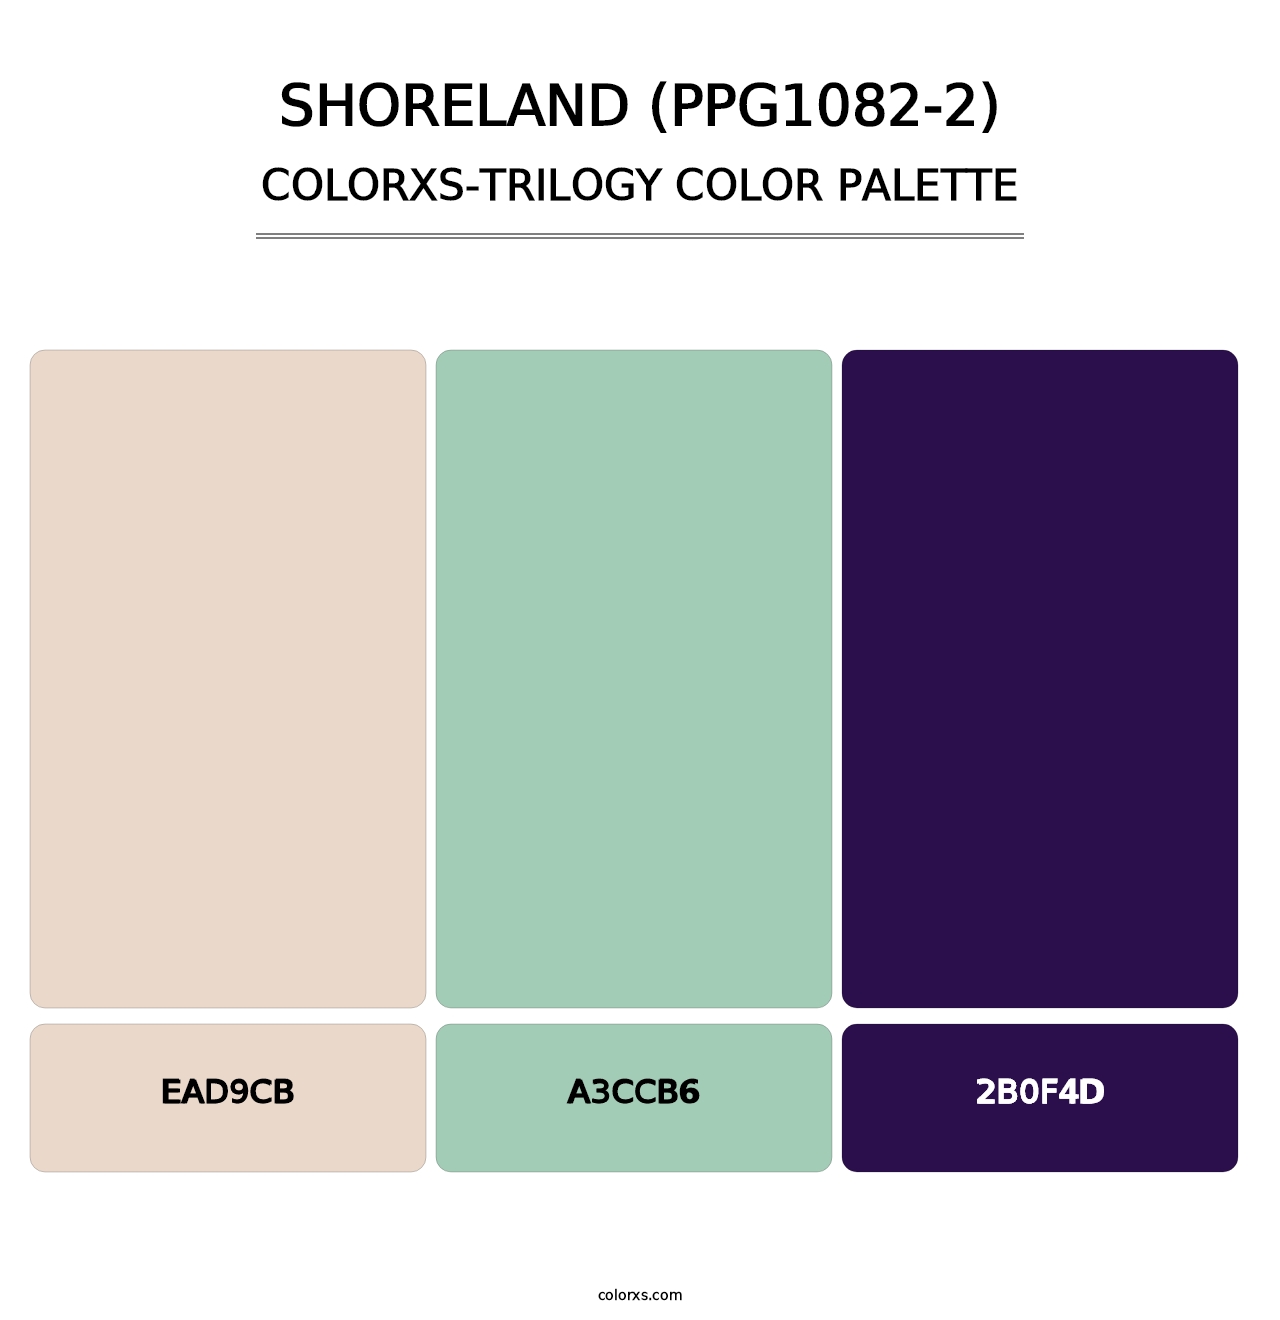 Shoreland (PPG1082-2) - Colorxs Trilogy Palette